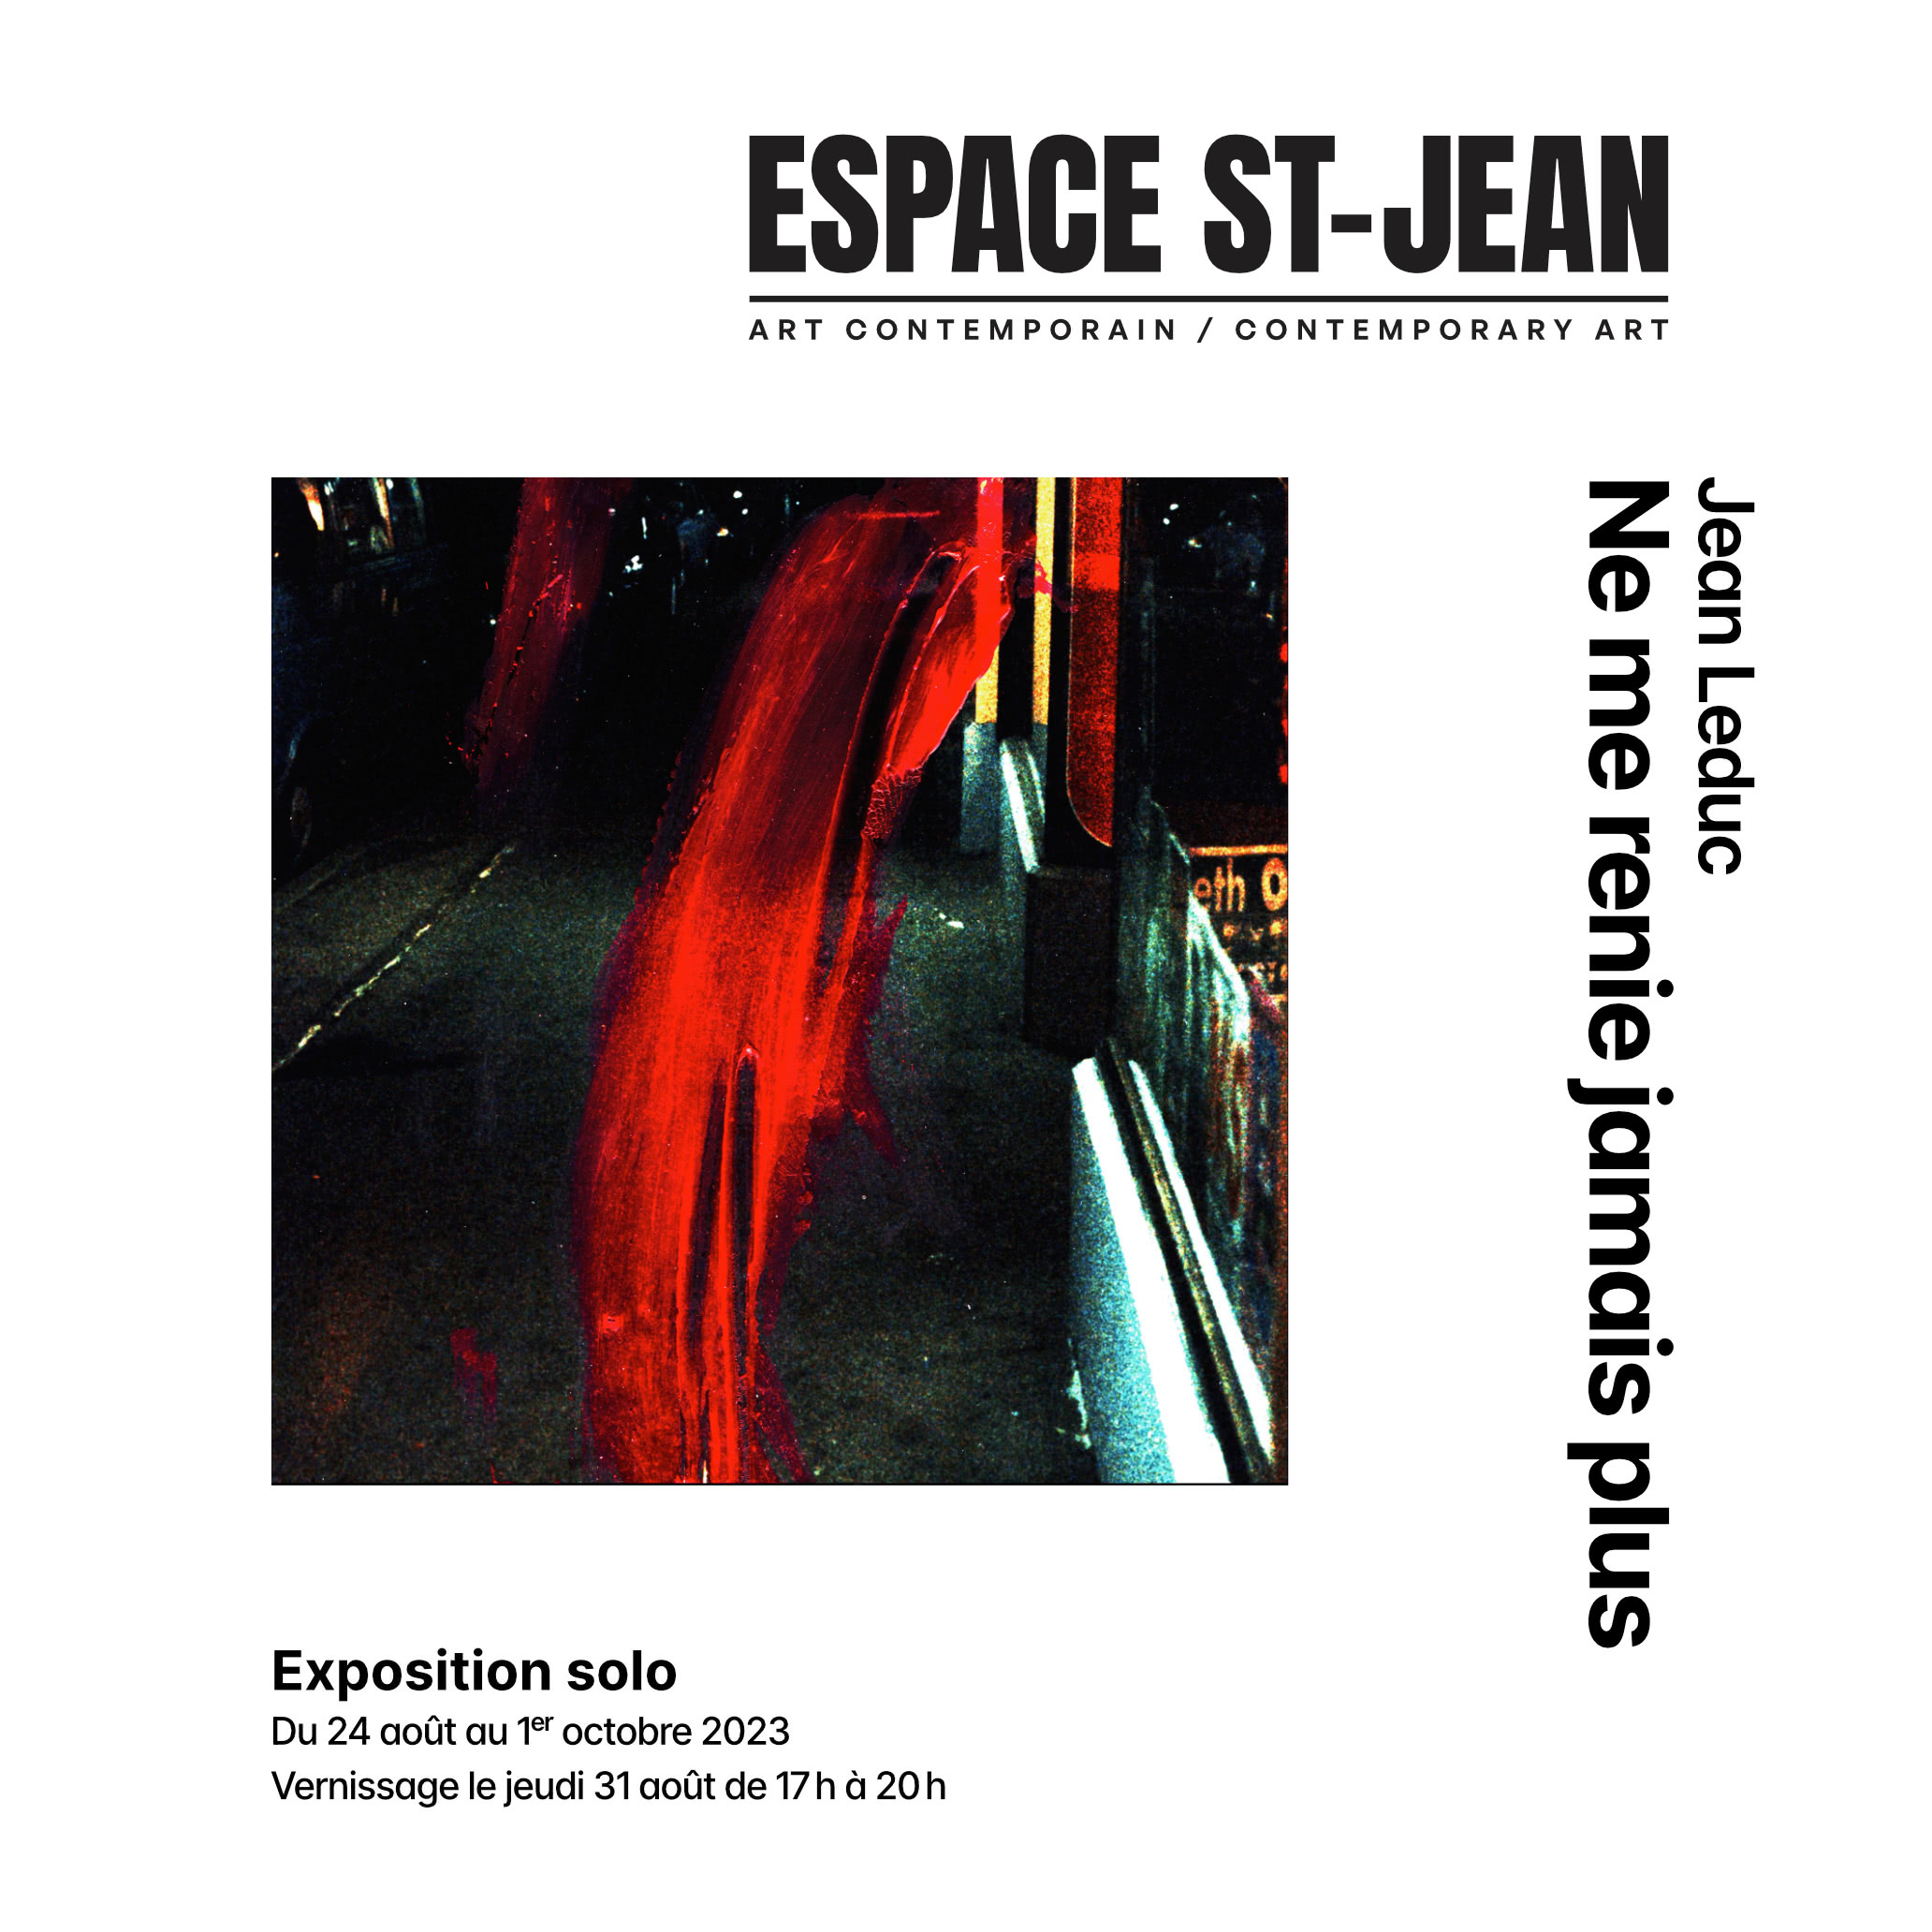 Annonce de l'exposition de Jean Leduc